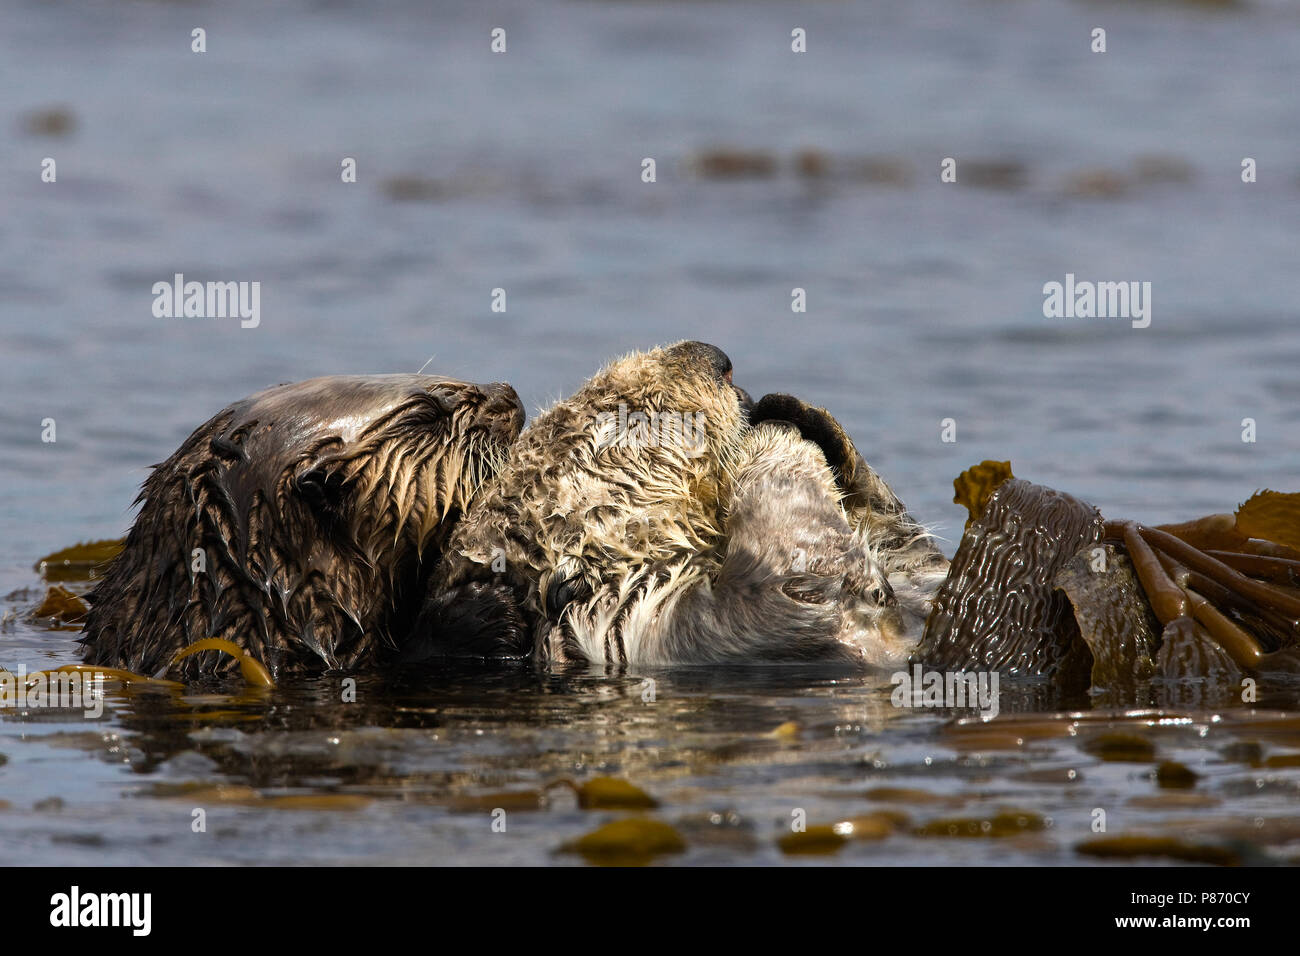 Twee Zeeotters in kelp gedraaid Californie USA, Two Sea Otters wrapped in kelp California USA Stock Photo